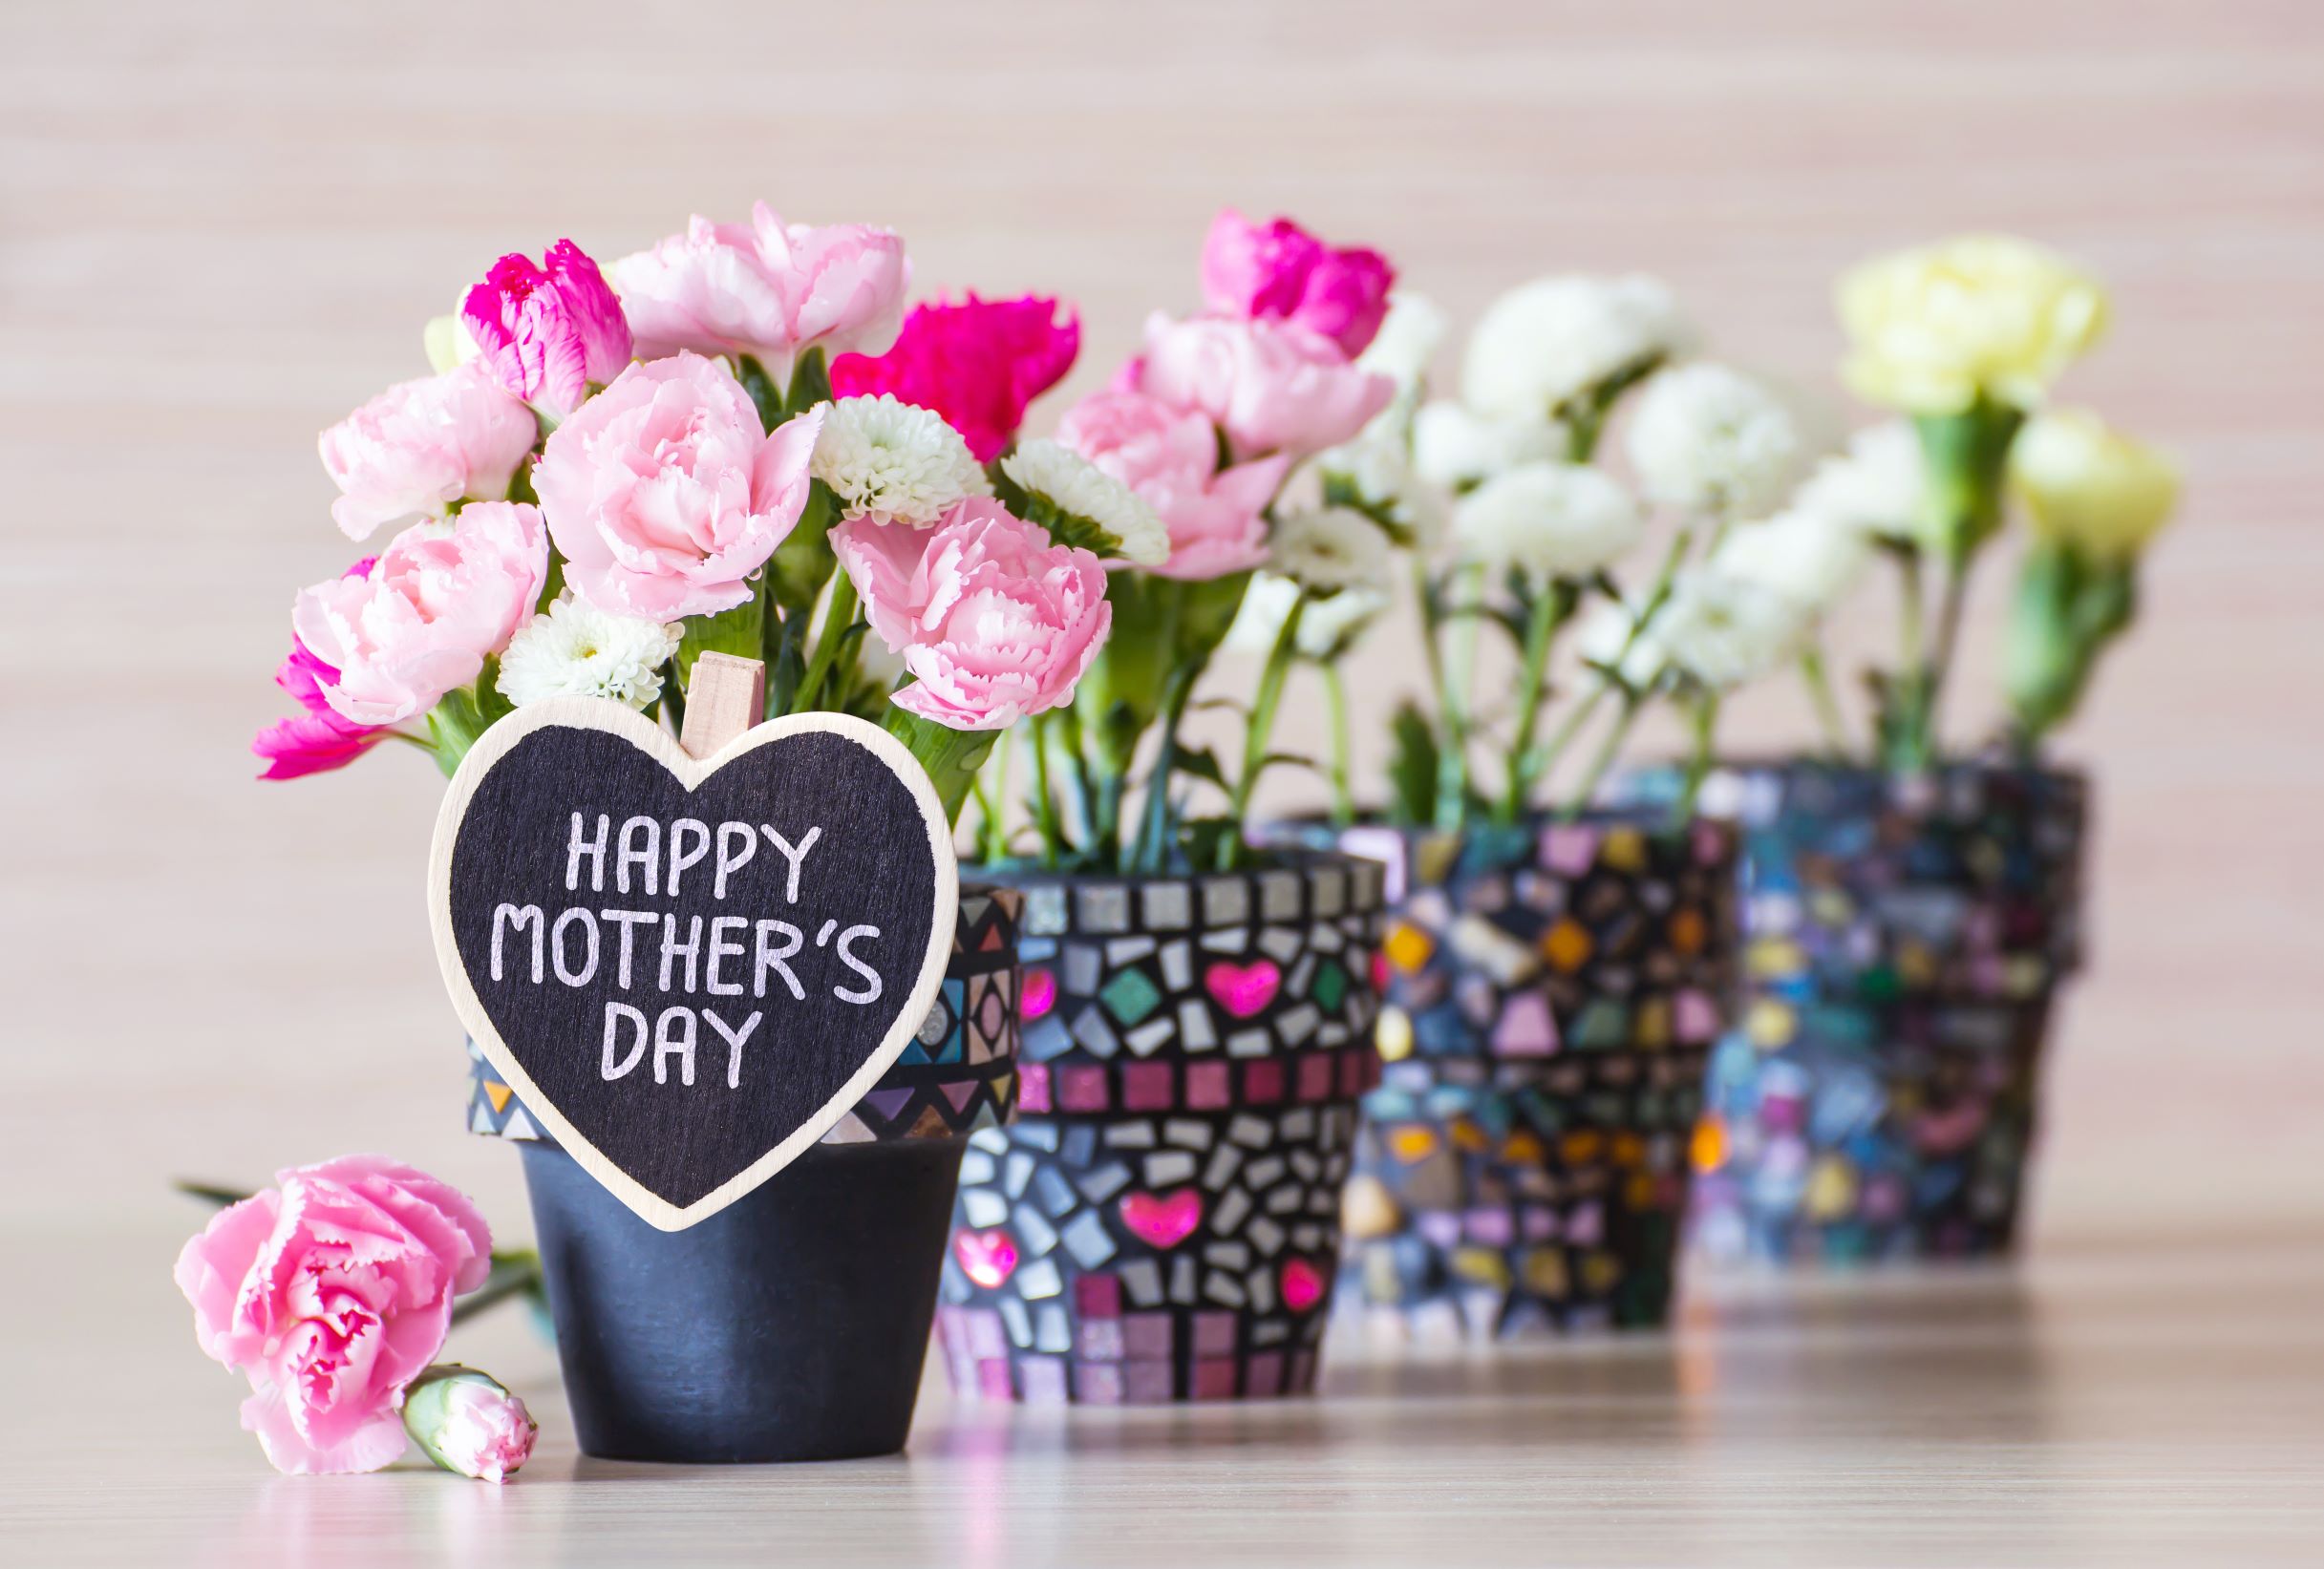 Праздник мама и цветы. Хэппи Мазерс дей. Счастливого дня матери. С днем матери стильно цветы. Цветы в подарок маме.